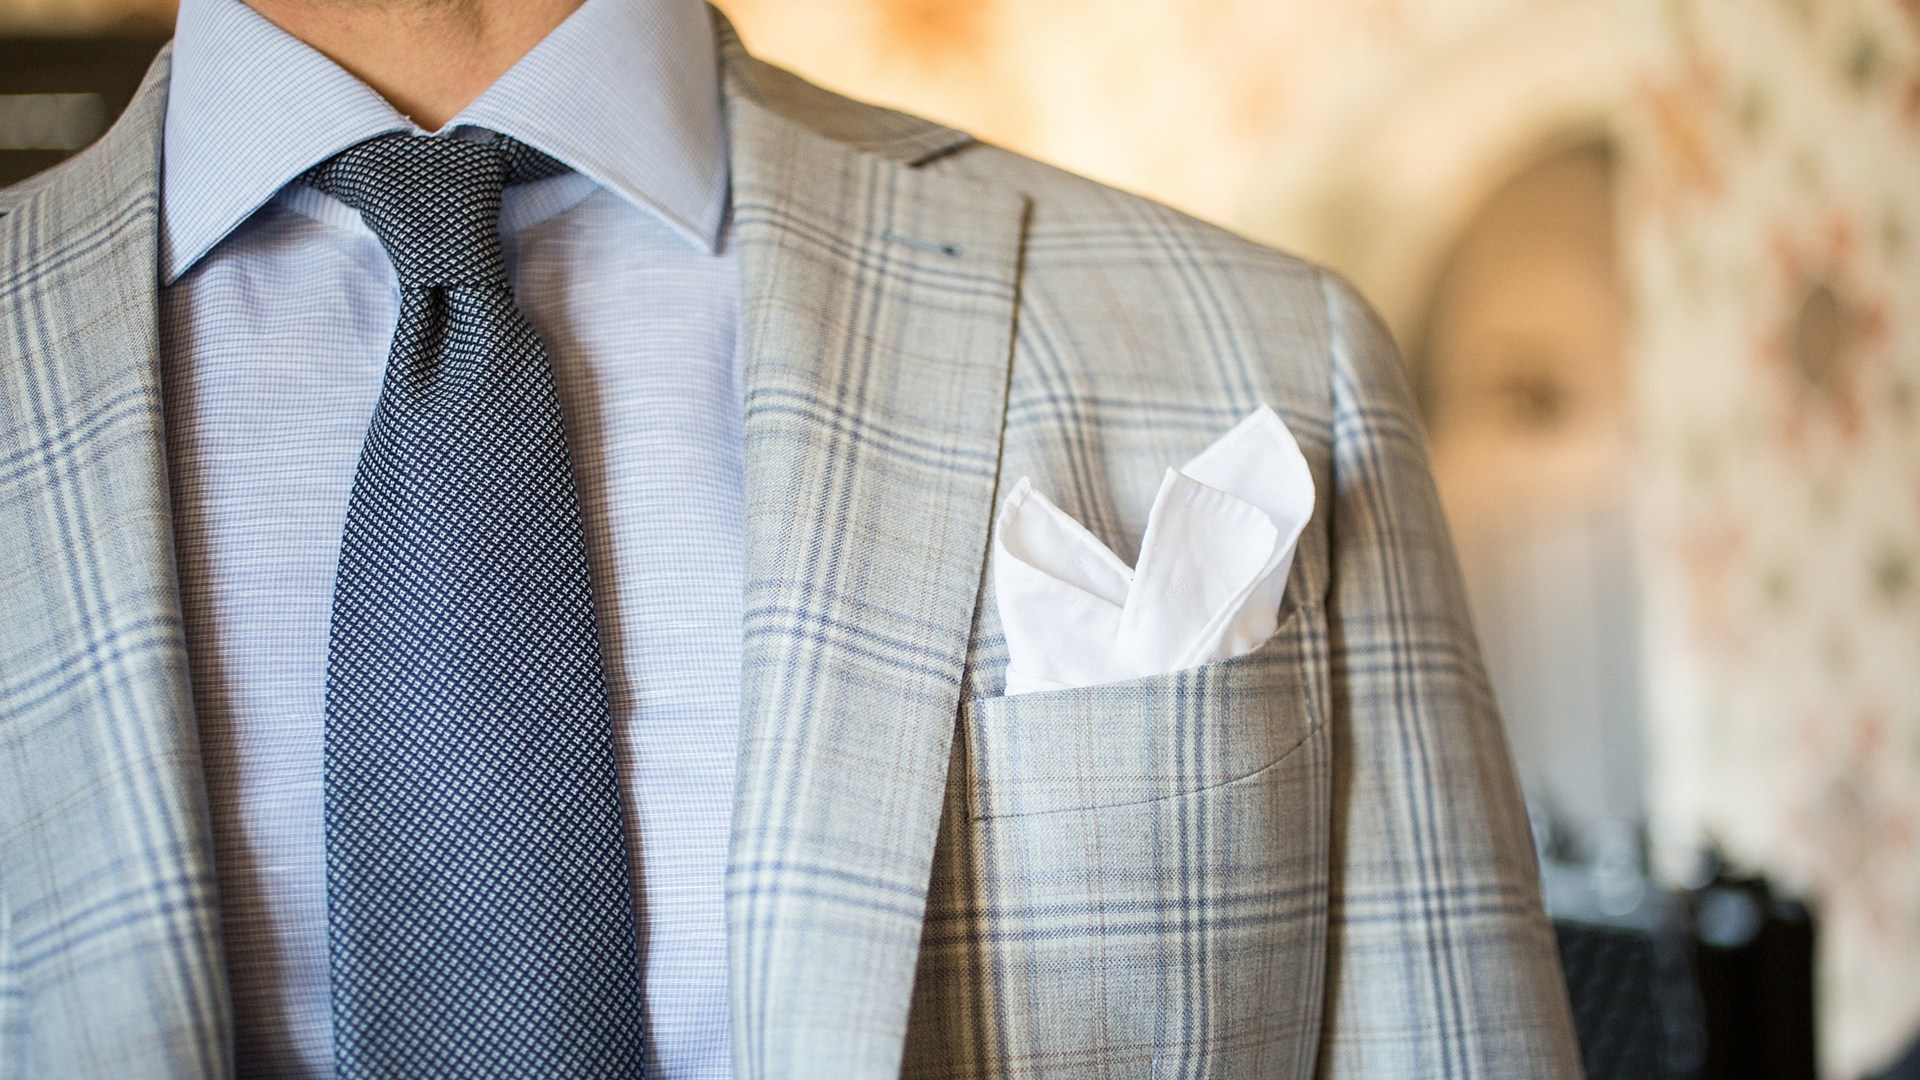 Dettaglio su una giacca da uomo Principe di galles, camicia azzurra, cravatta blu e pochette bianca piegata a sbuffo